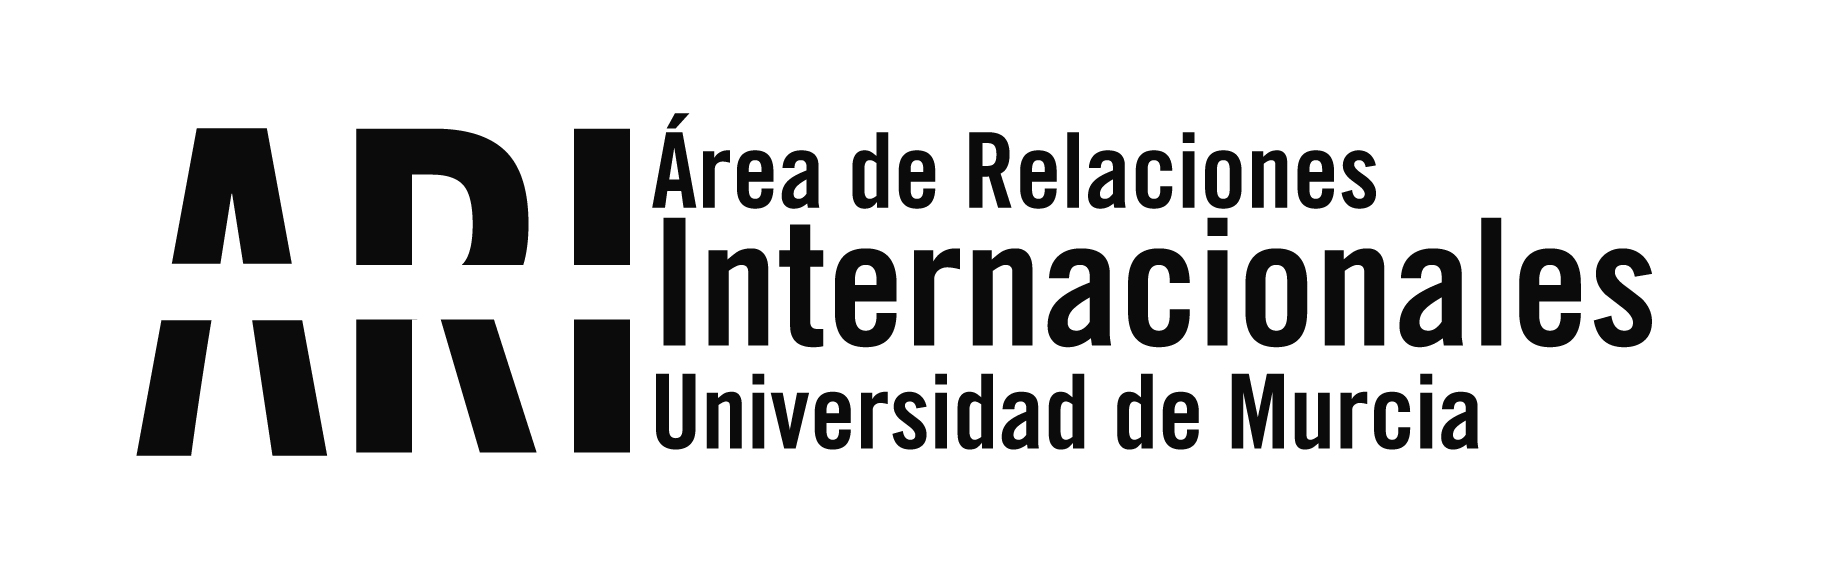 Convocatoria de Becas del Gobierno Chino 2021-2022 para estudiantes españoles: solicitud hasta el 21 de enero - Área de Relaciones Internacionales